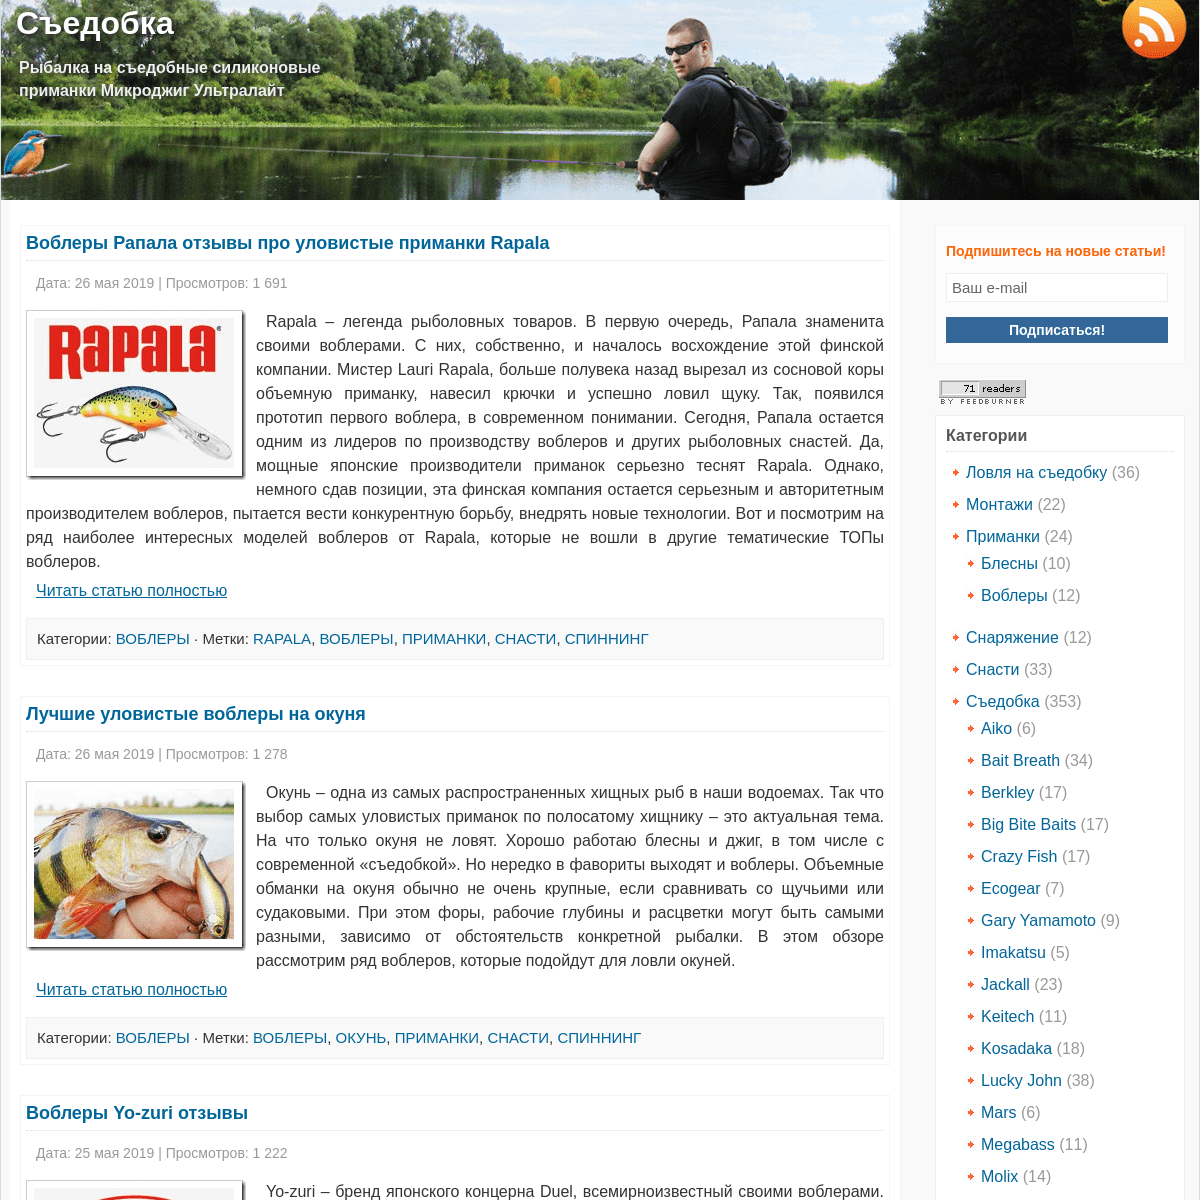 A complete backup of sedobka.ru